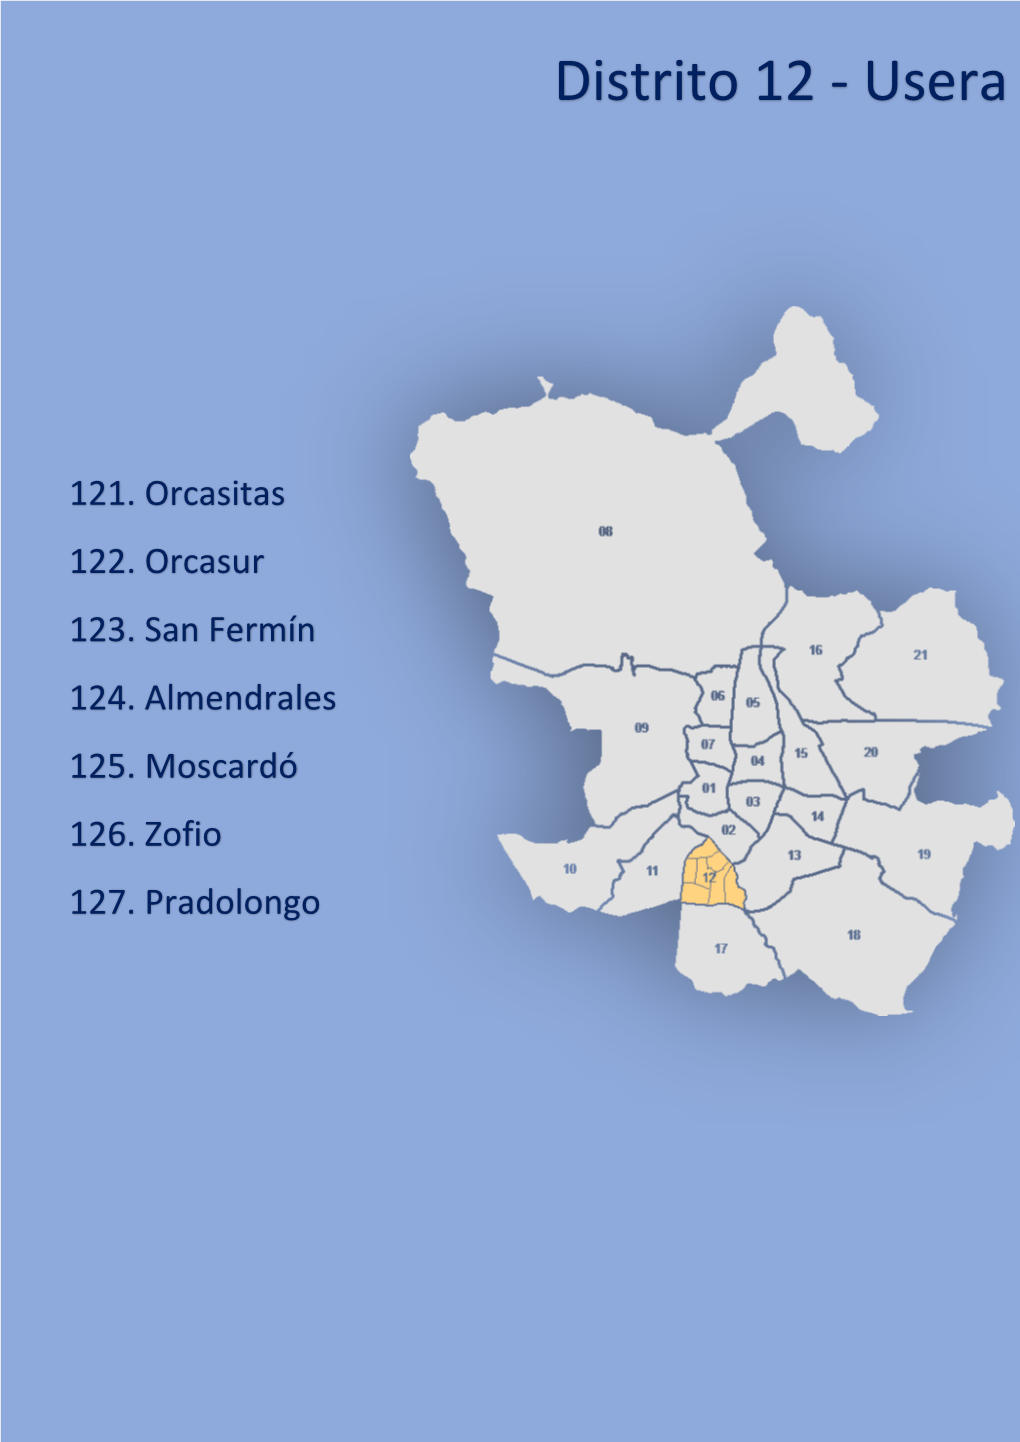 Distrito 12 - Usera